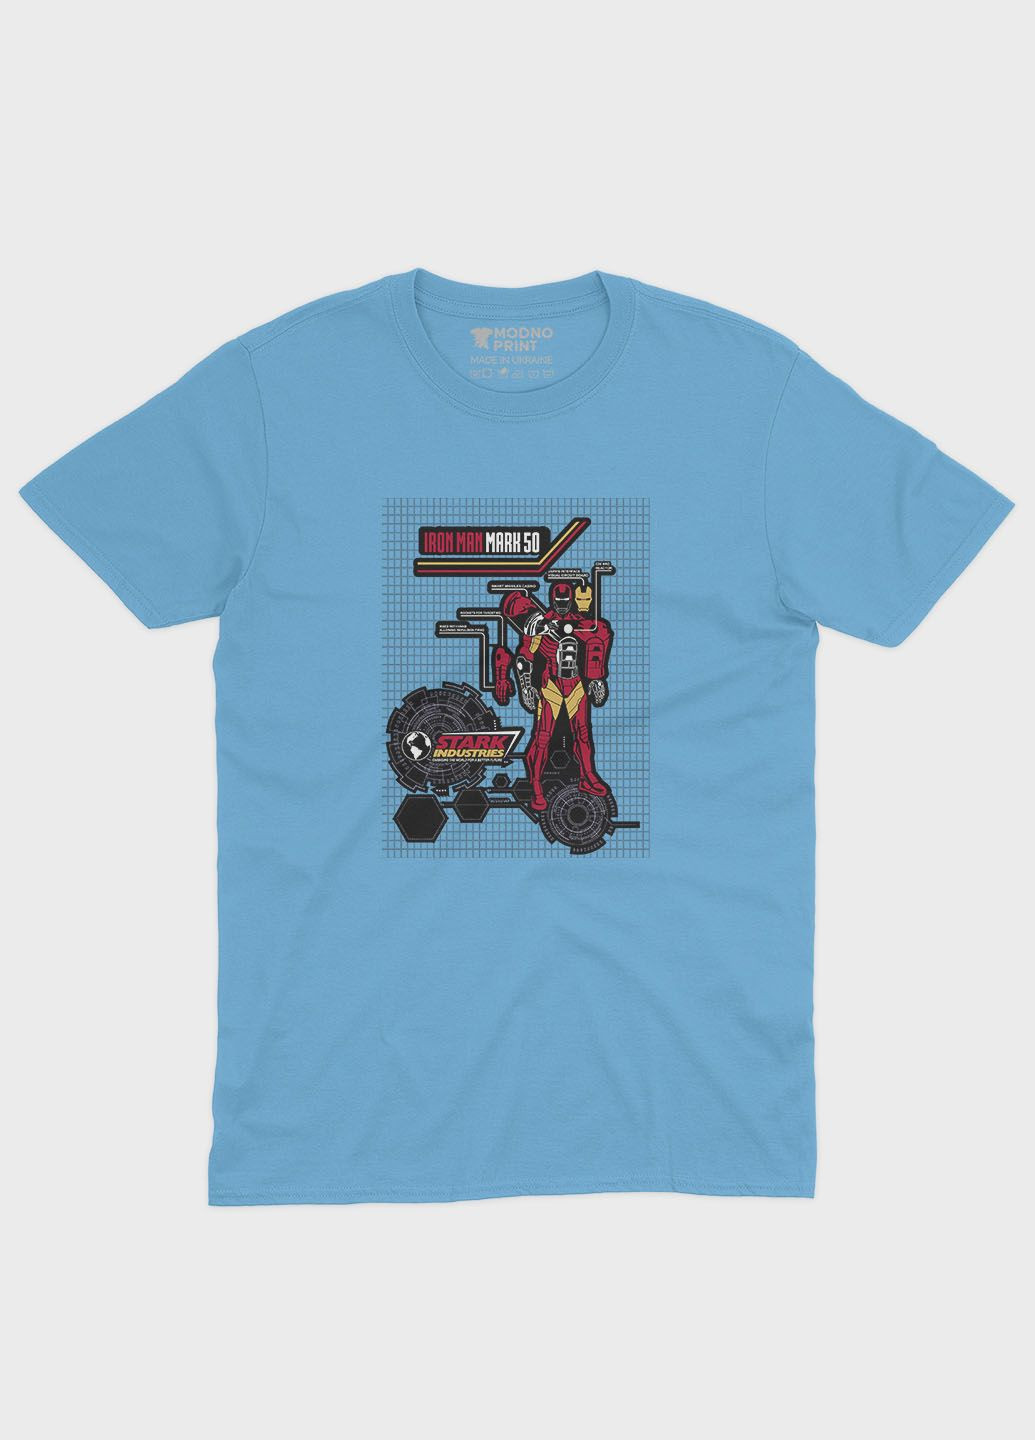 Голубая демисезонная футболка для мальчика с принтом супергероя - железный человек (ts001-1-lbl-006-016-014-b) Modno